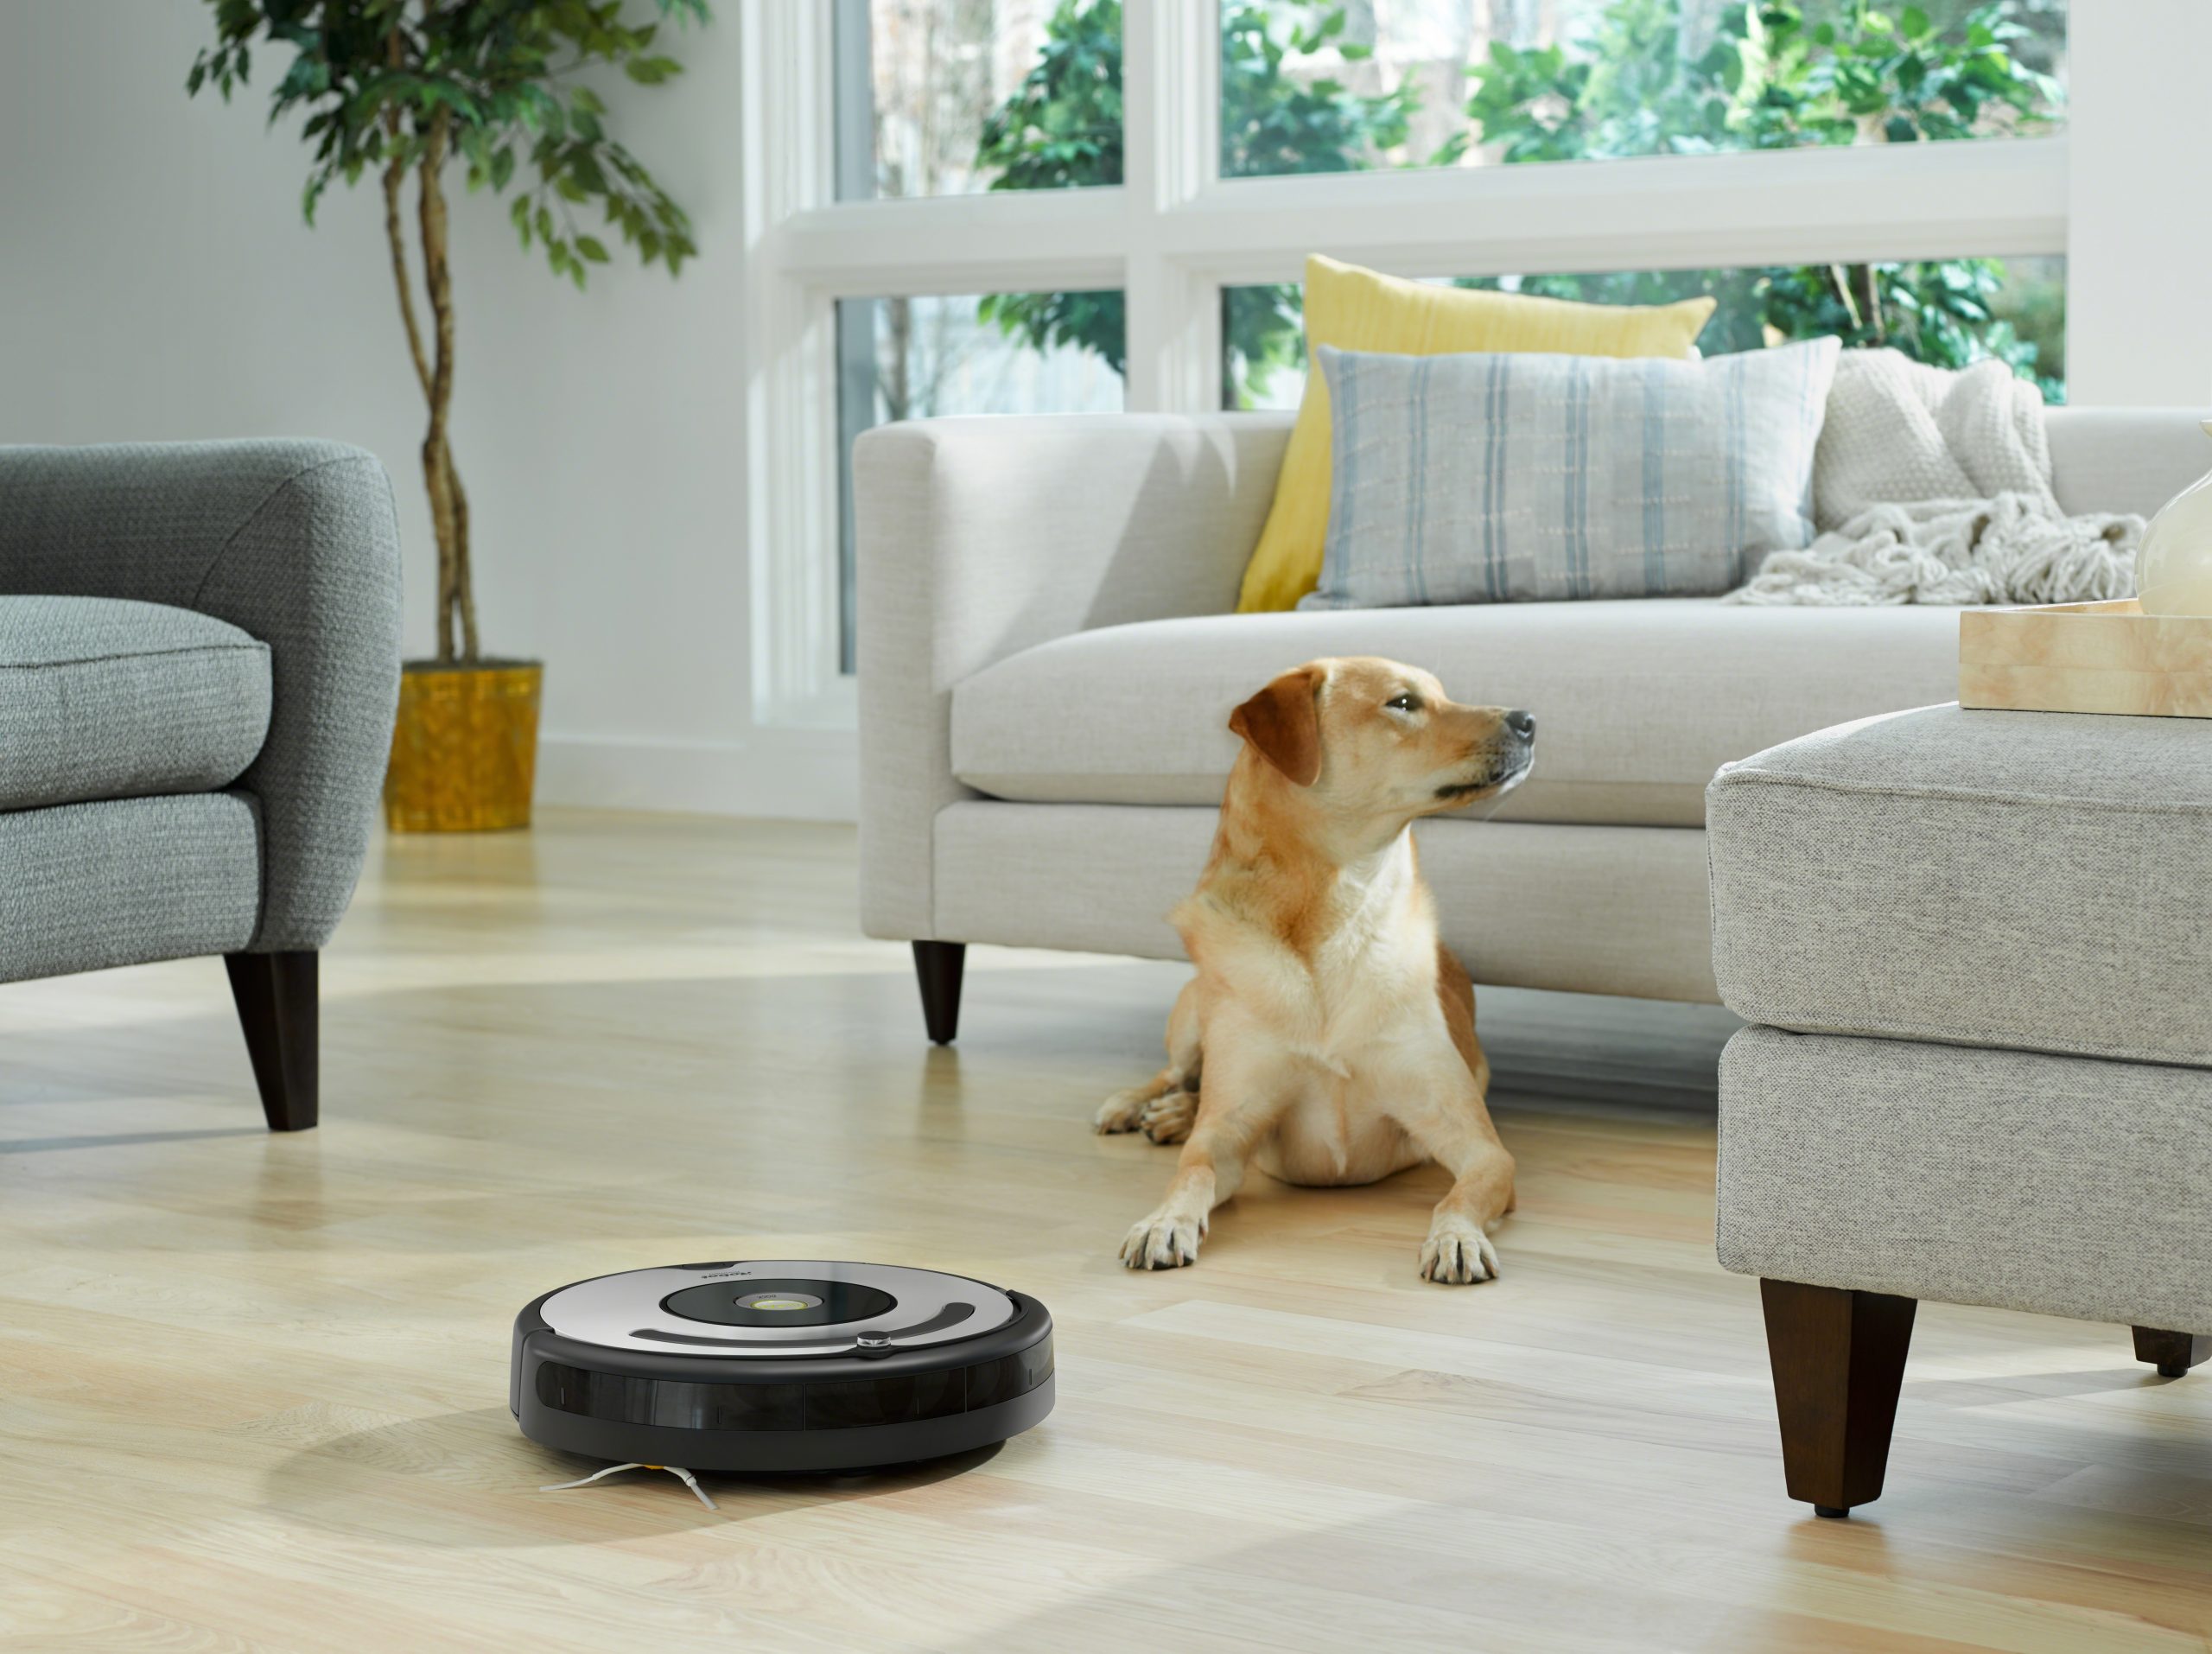 Robot Aspiradora iRobot Roomba i1 con Conexión Wi-Fi